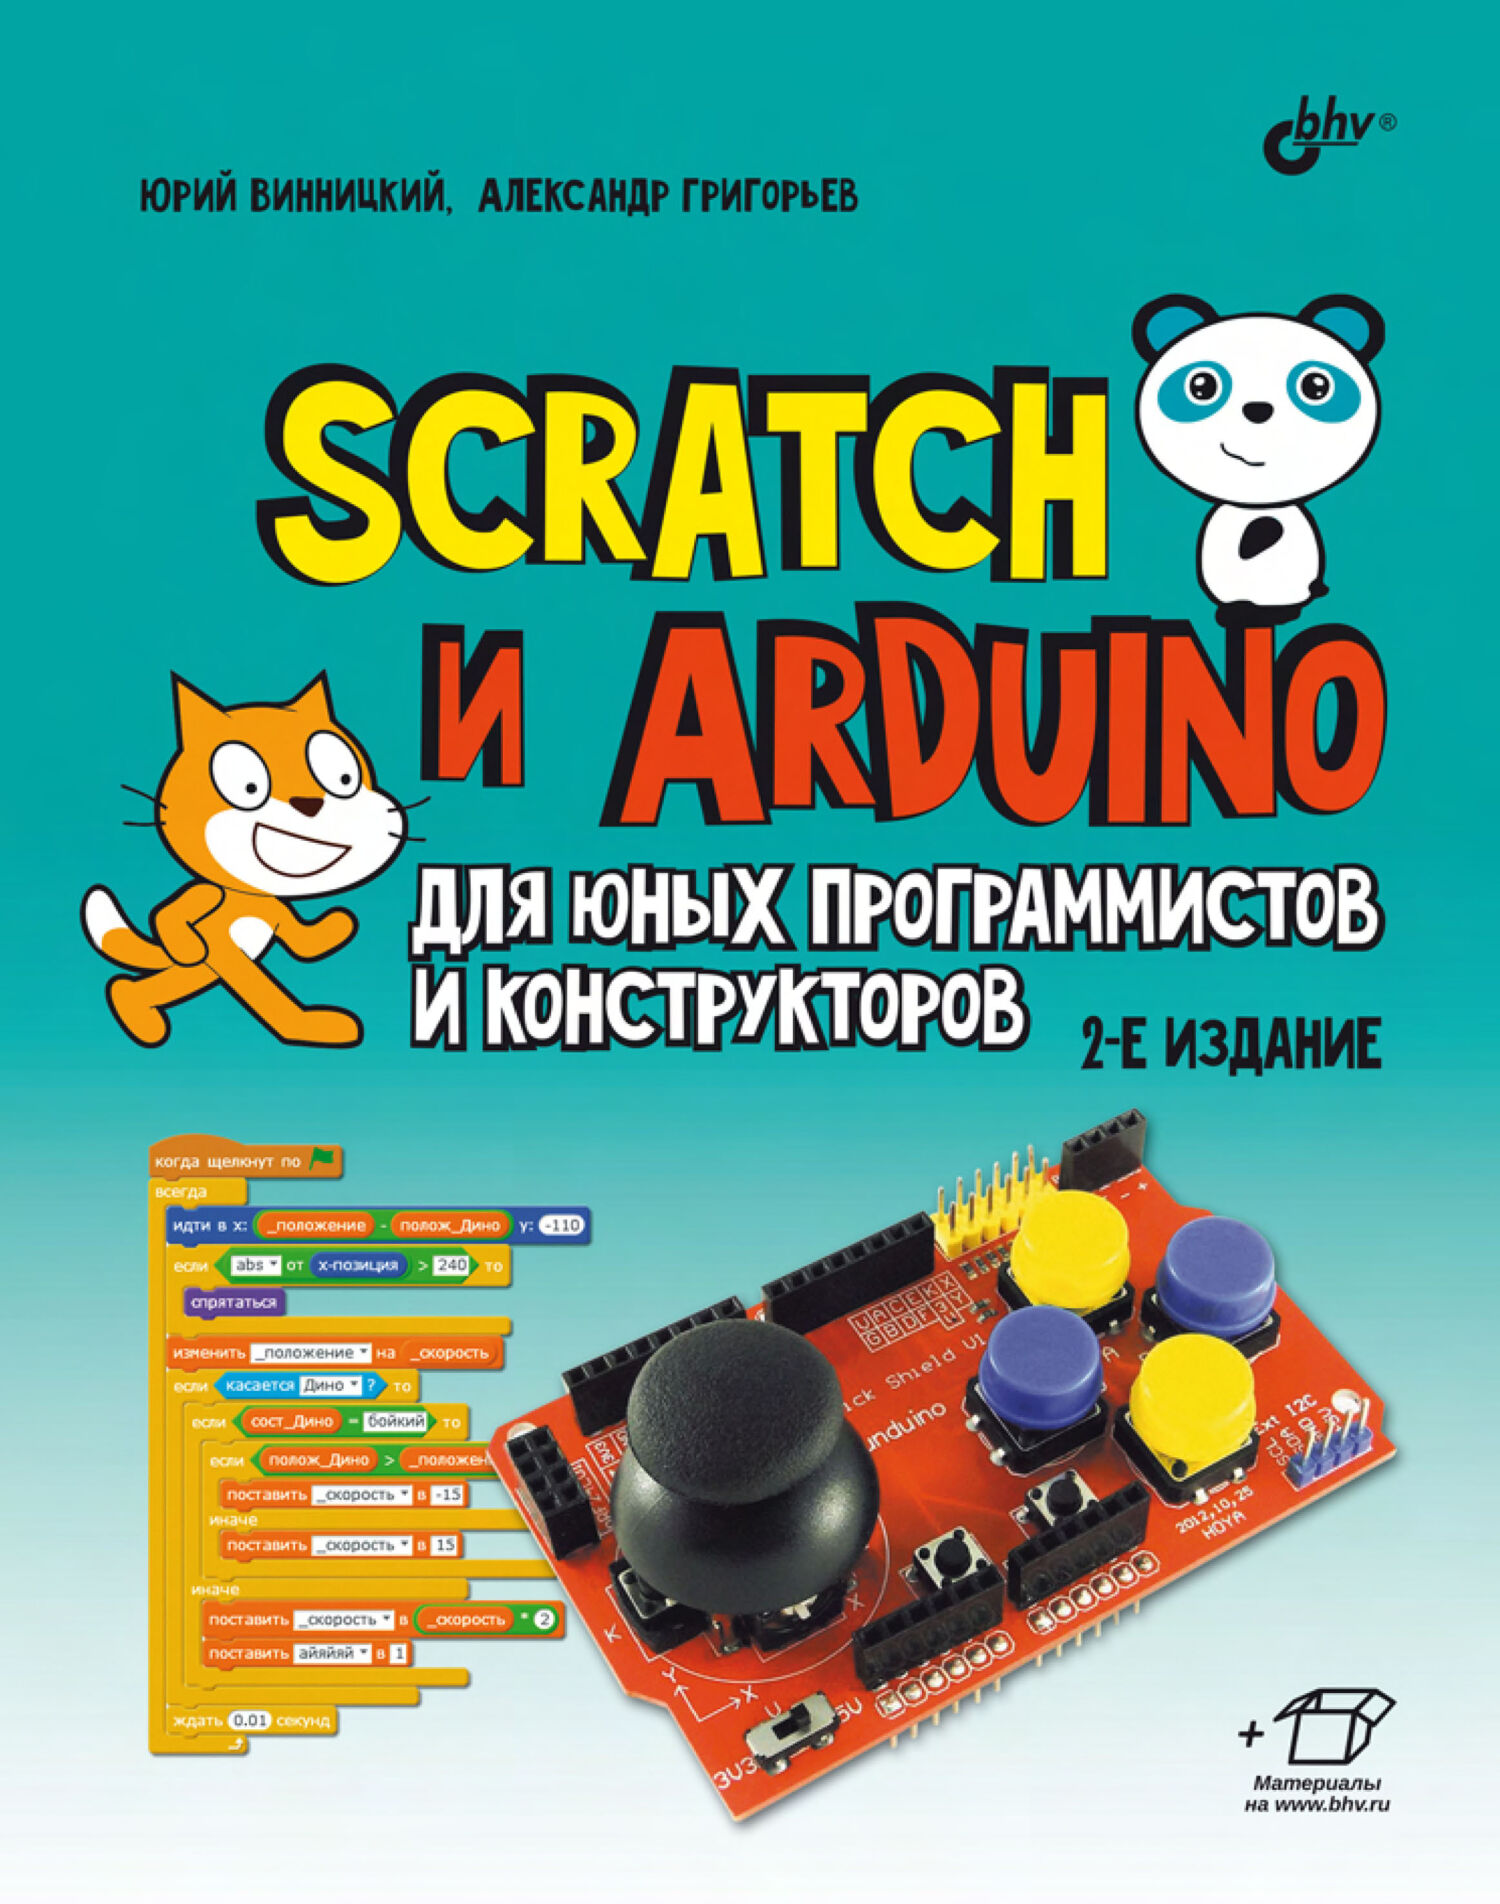 Книга  Scratch и Arduino для юных программистов и конструкторов созданная Александр Григорьев, Ю. А. Винницкий может относится к жанру детская познавательная и развивающая литература, компьютерное железо, программирование, электроника. Стоимость электронной книги Scratch и Arduino для юных программистов и конструкторов с идентификатором 39285673 составляет 448.00 руб.